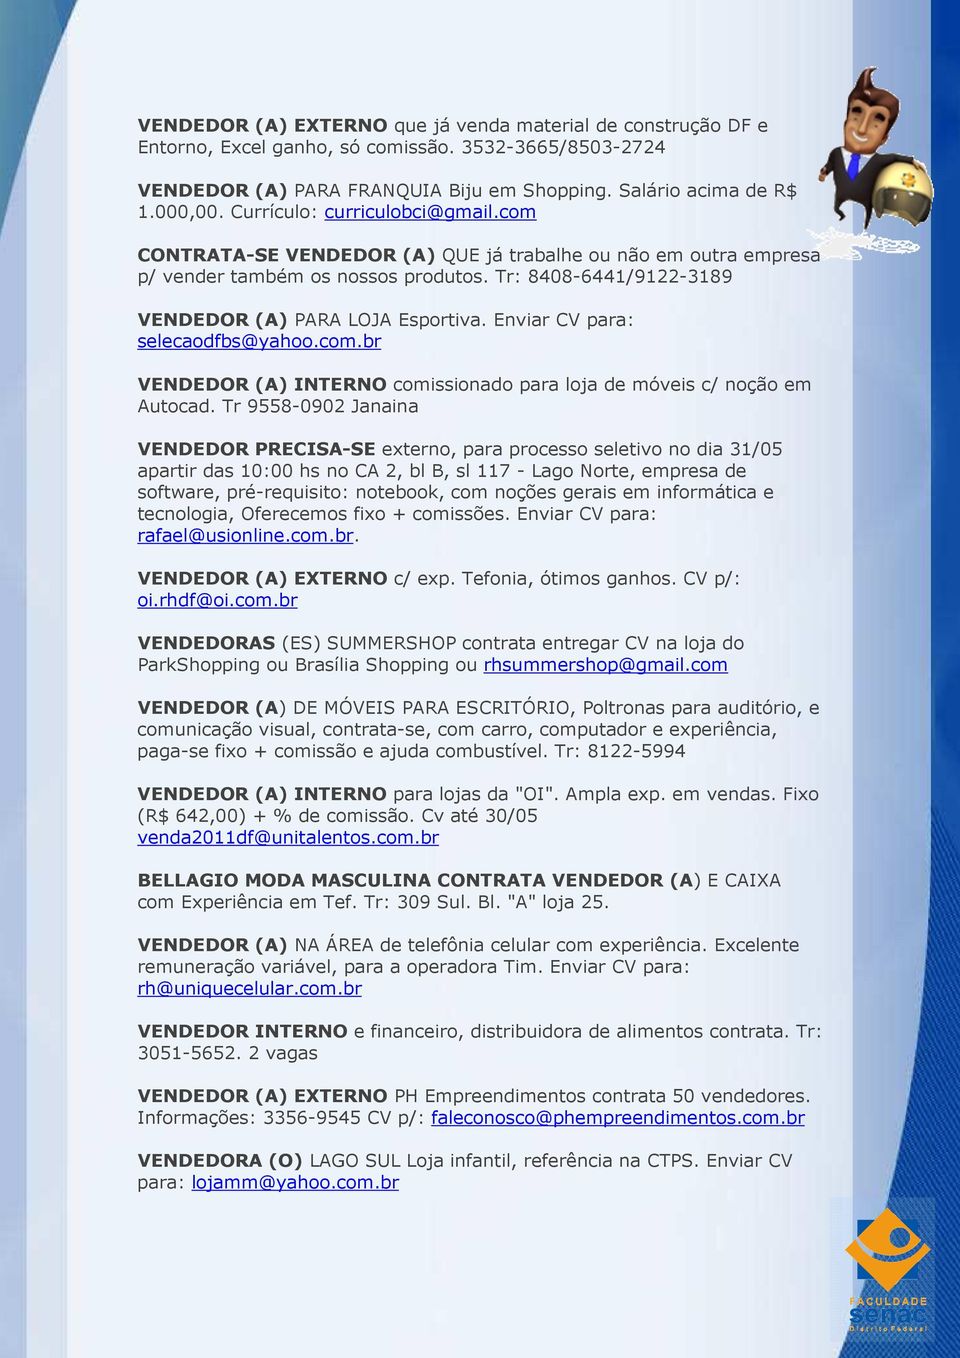 Enviar CV para: selecaodfbs@yahoo.com.br VENDEDOR (A) INTERNO comissionado para loja de móveis c/ noção em Autocad.